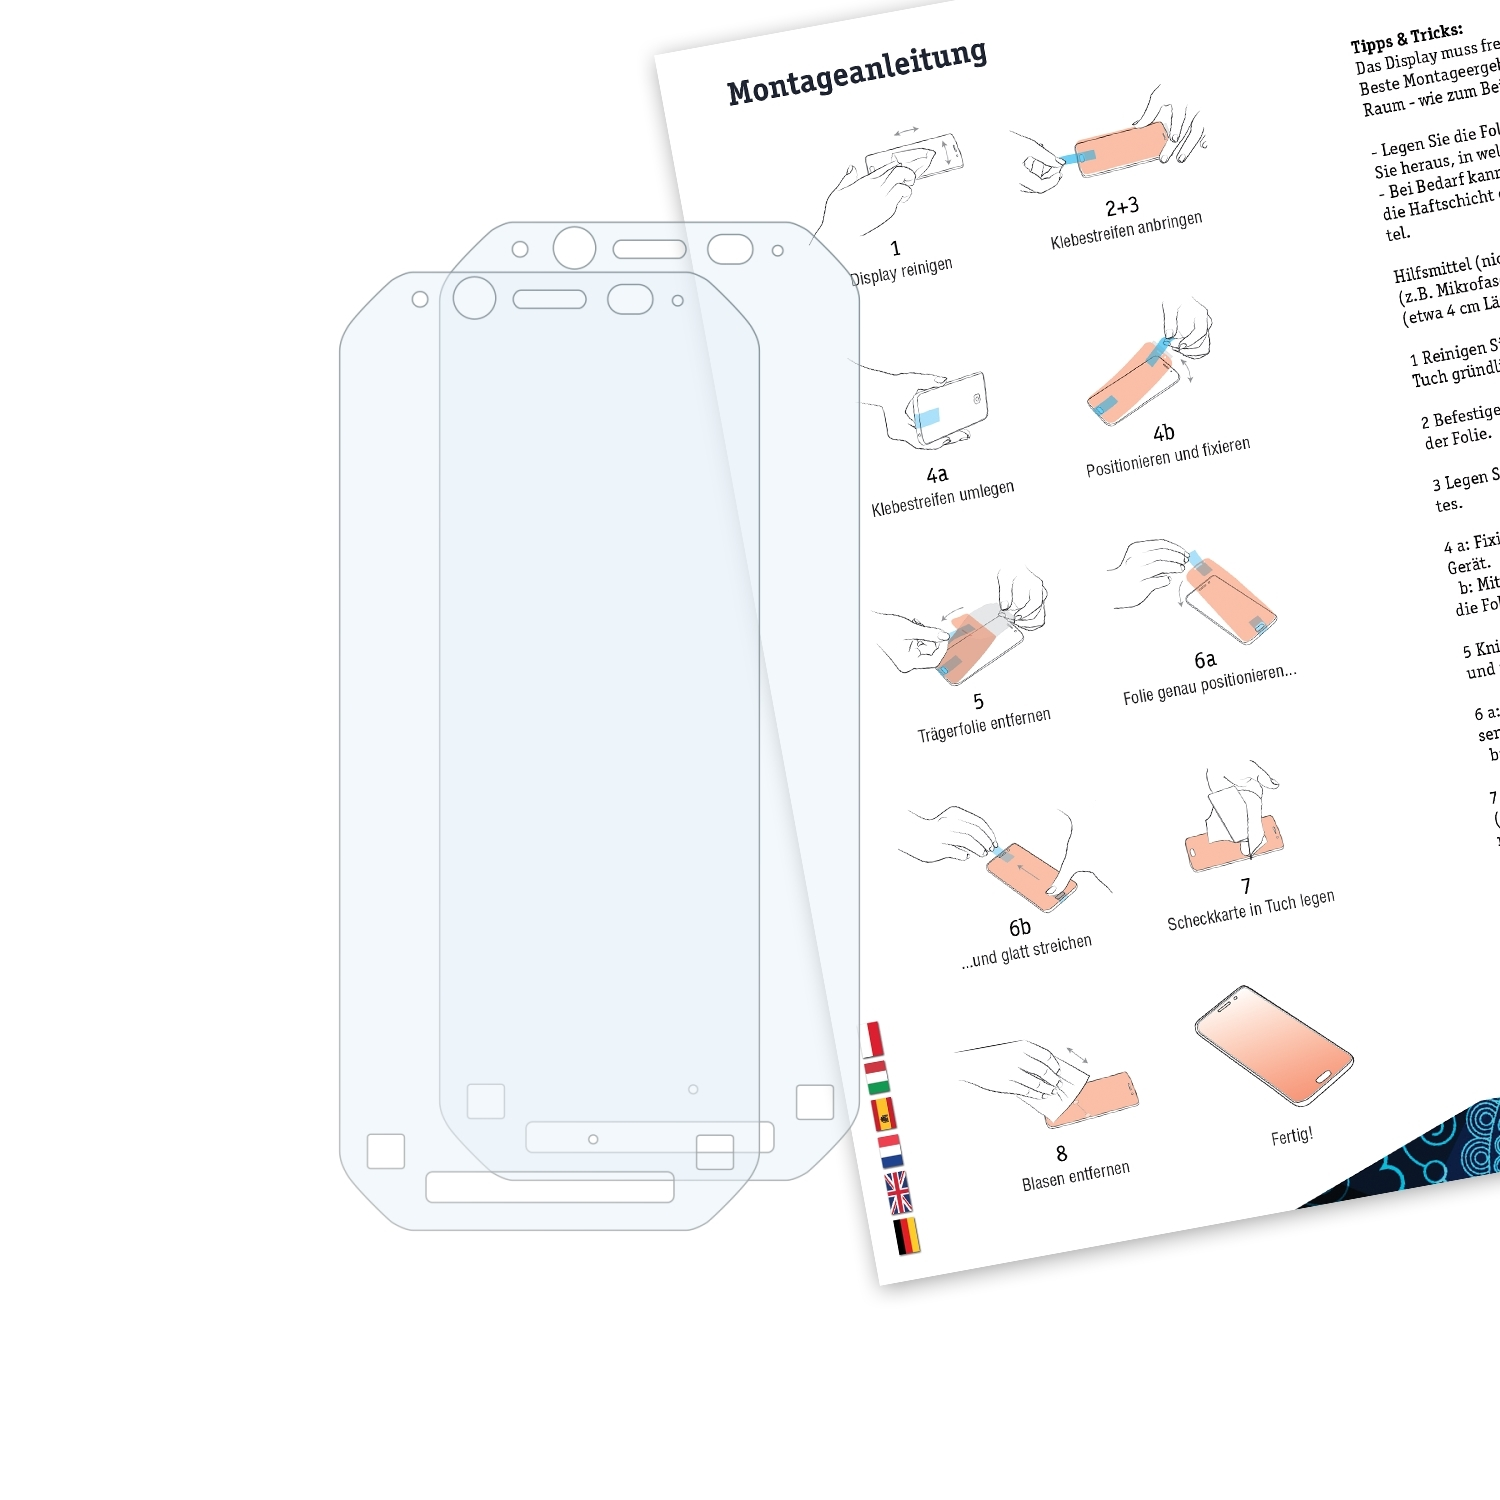 BRUNI 2x Basics-Clear Panasonic Toughbook Schutzfolie(für FZ-N1)